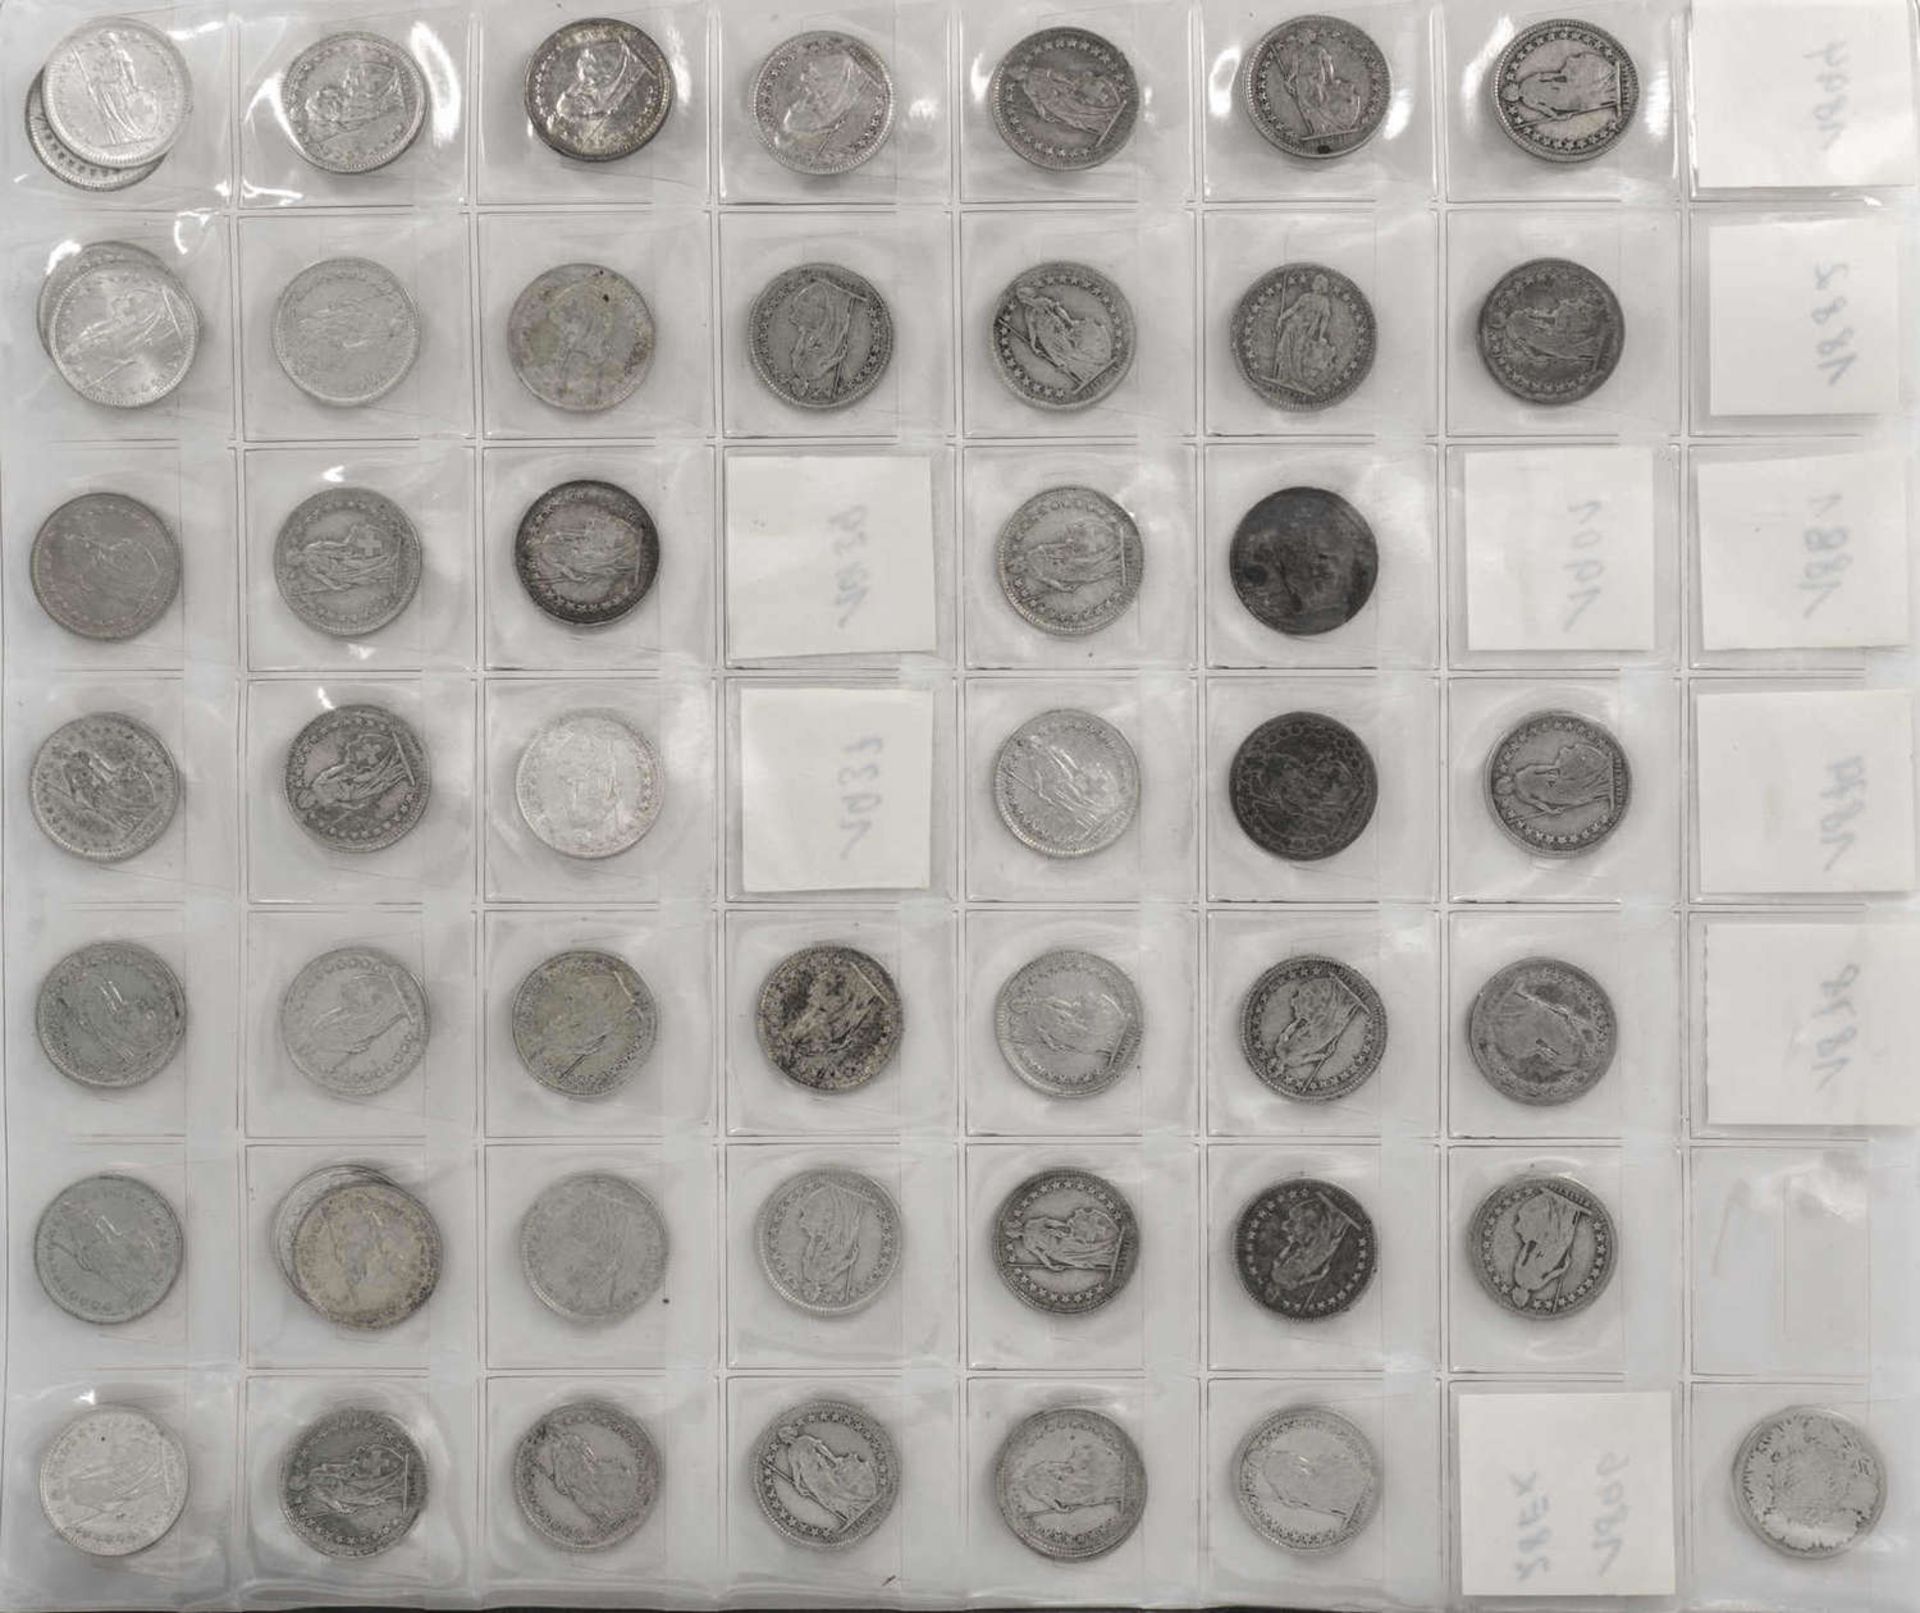 Schweiz 1879/1966, Sammlung 1/2 Franken - Münzen von 1879 bis 1966. Insgesamt 53 Stück. Erhaltung: - Bild 2 aus 2